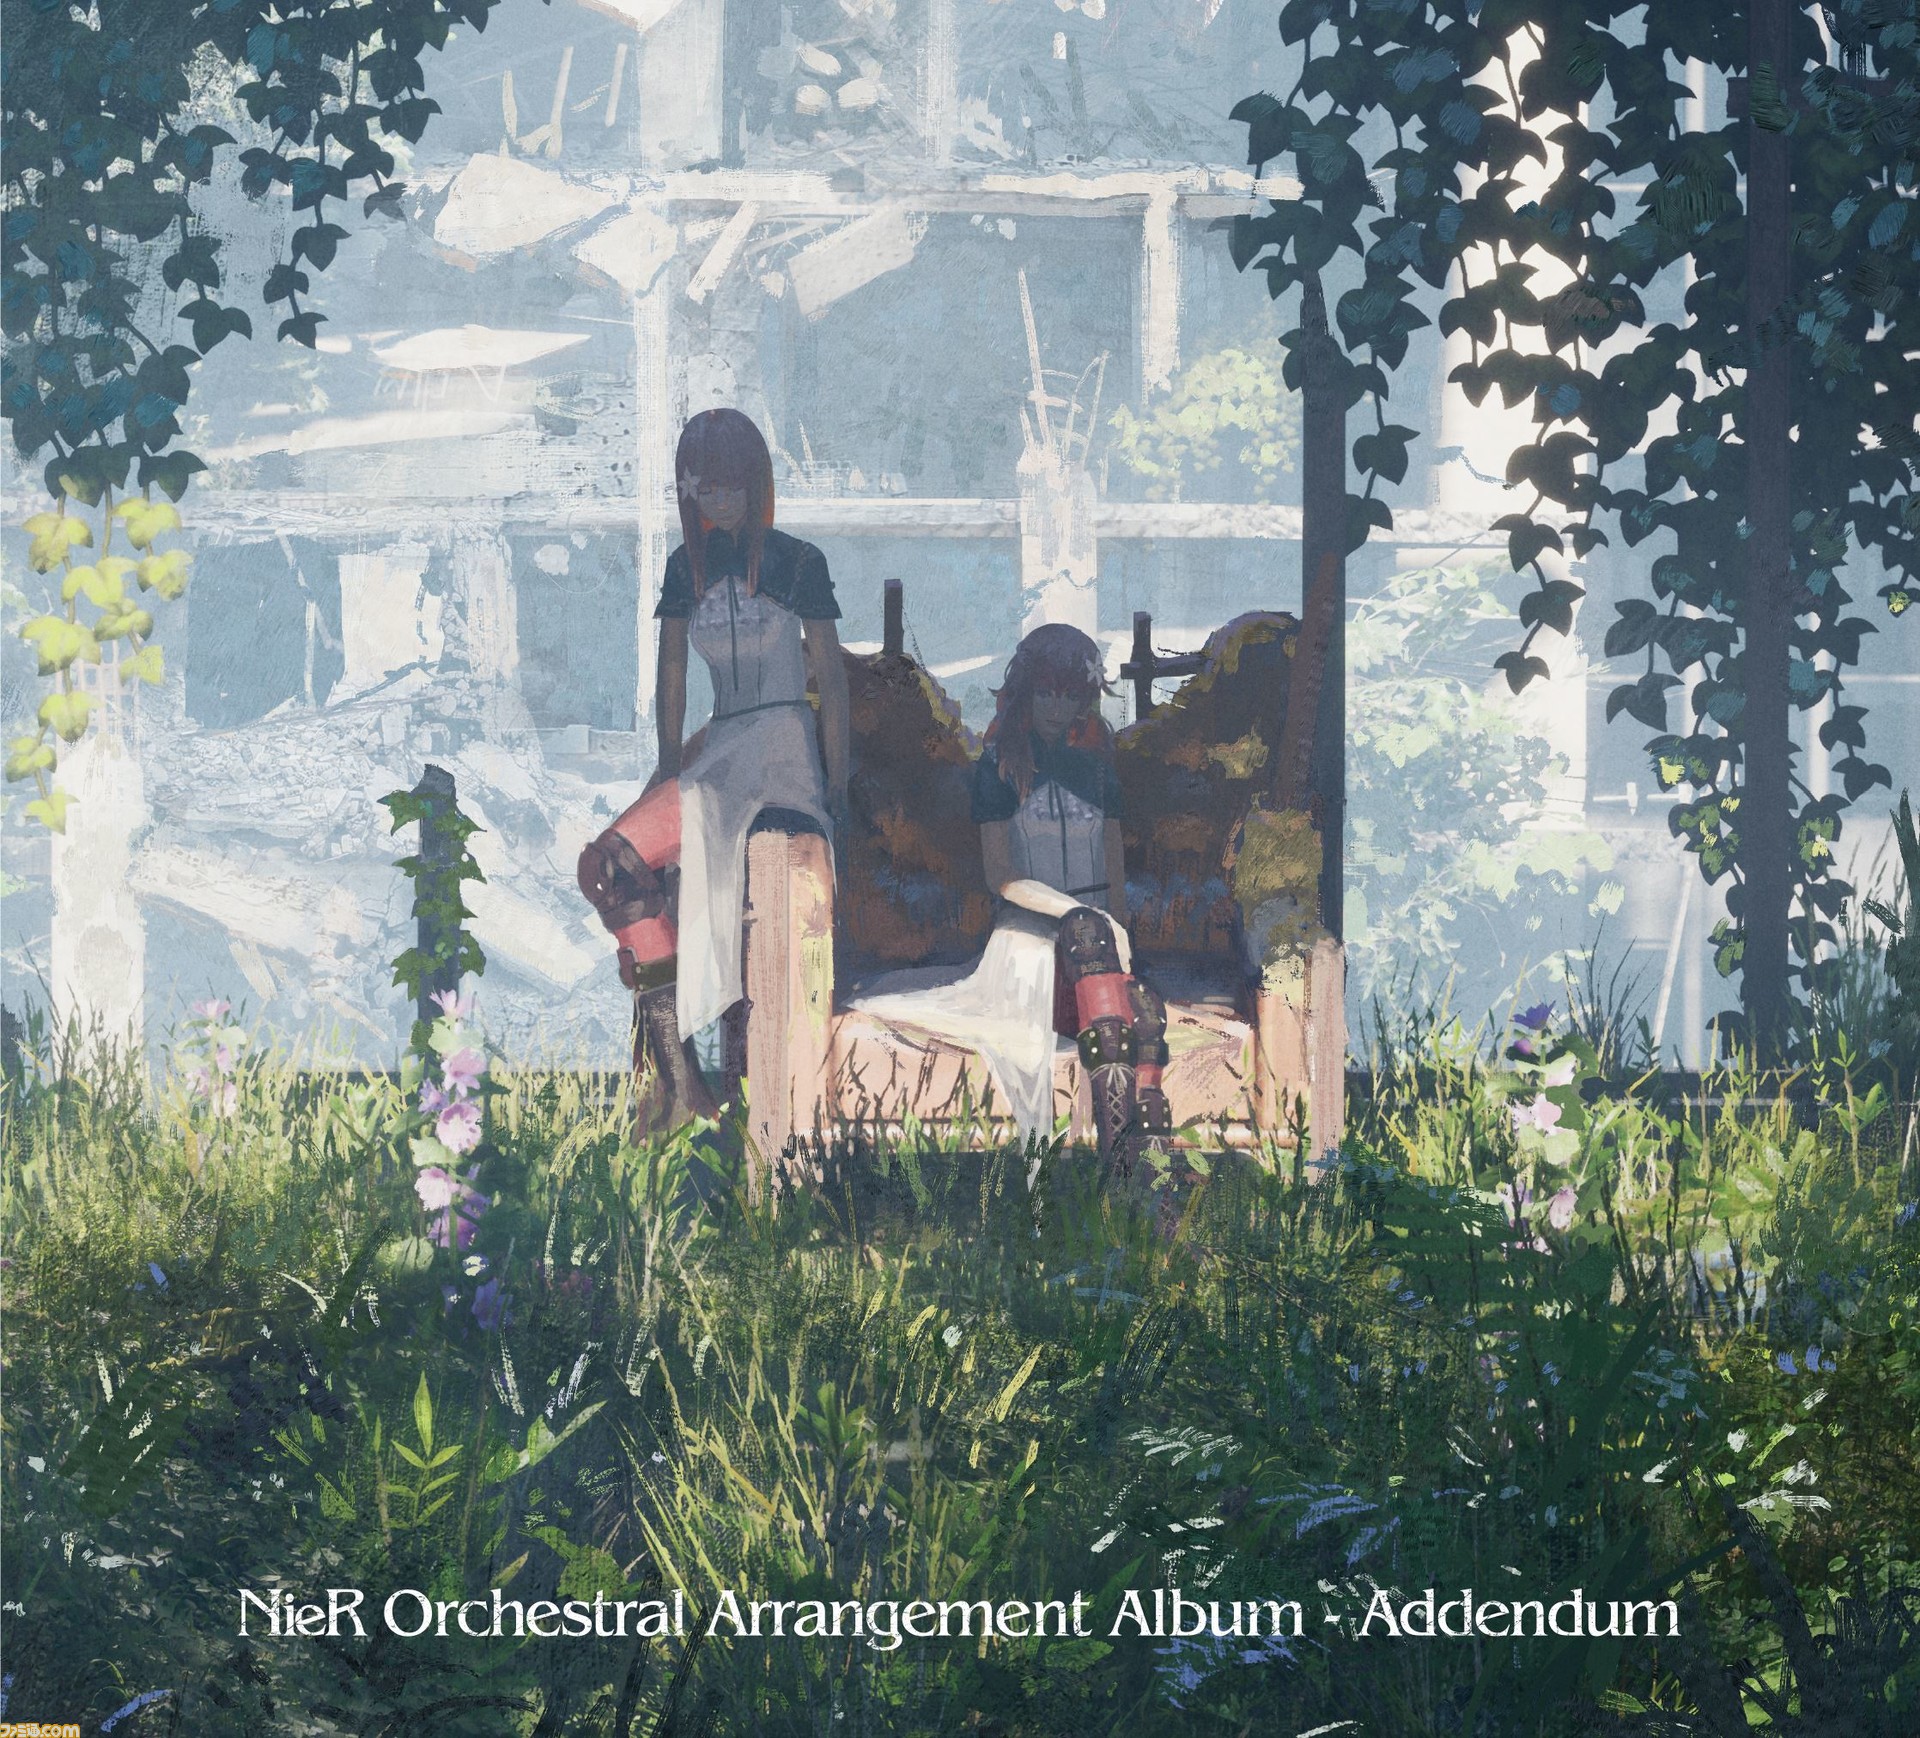 ニーア シリーズ10周年記念 オーケストラアレンジされる楽曲を収録したアルバム Nier Orchestral Arrangement Album Addendum が本日発売 ファミ通 Com